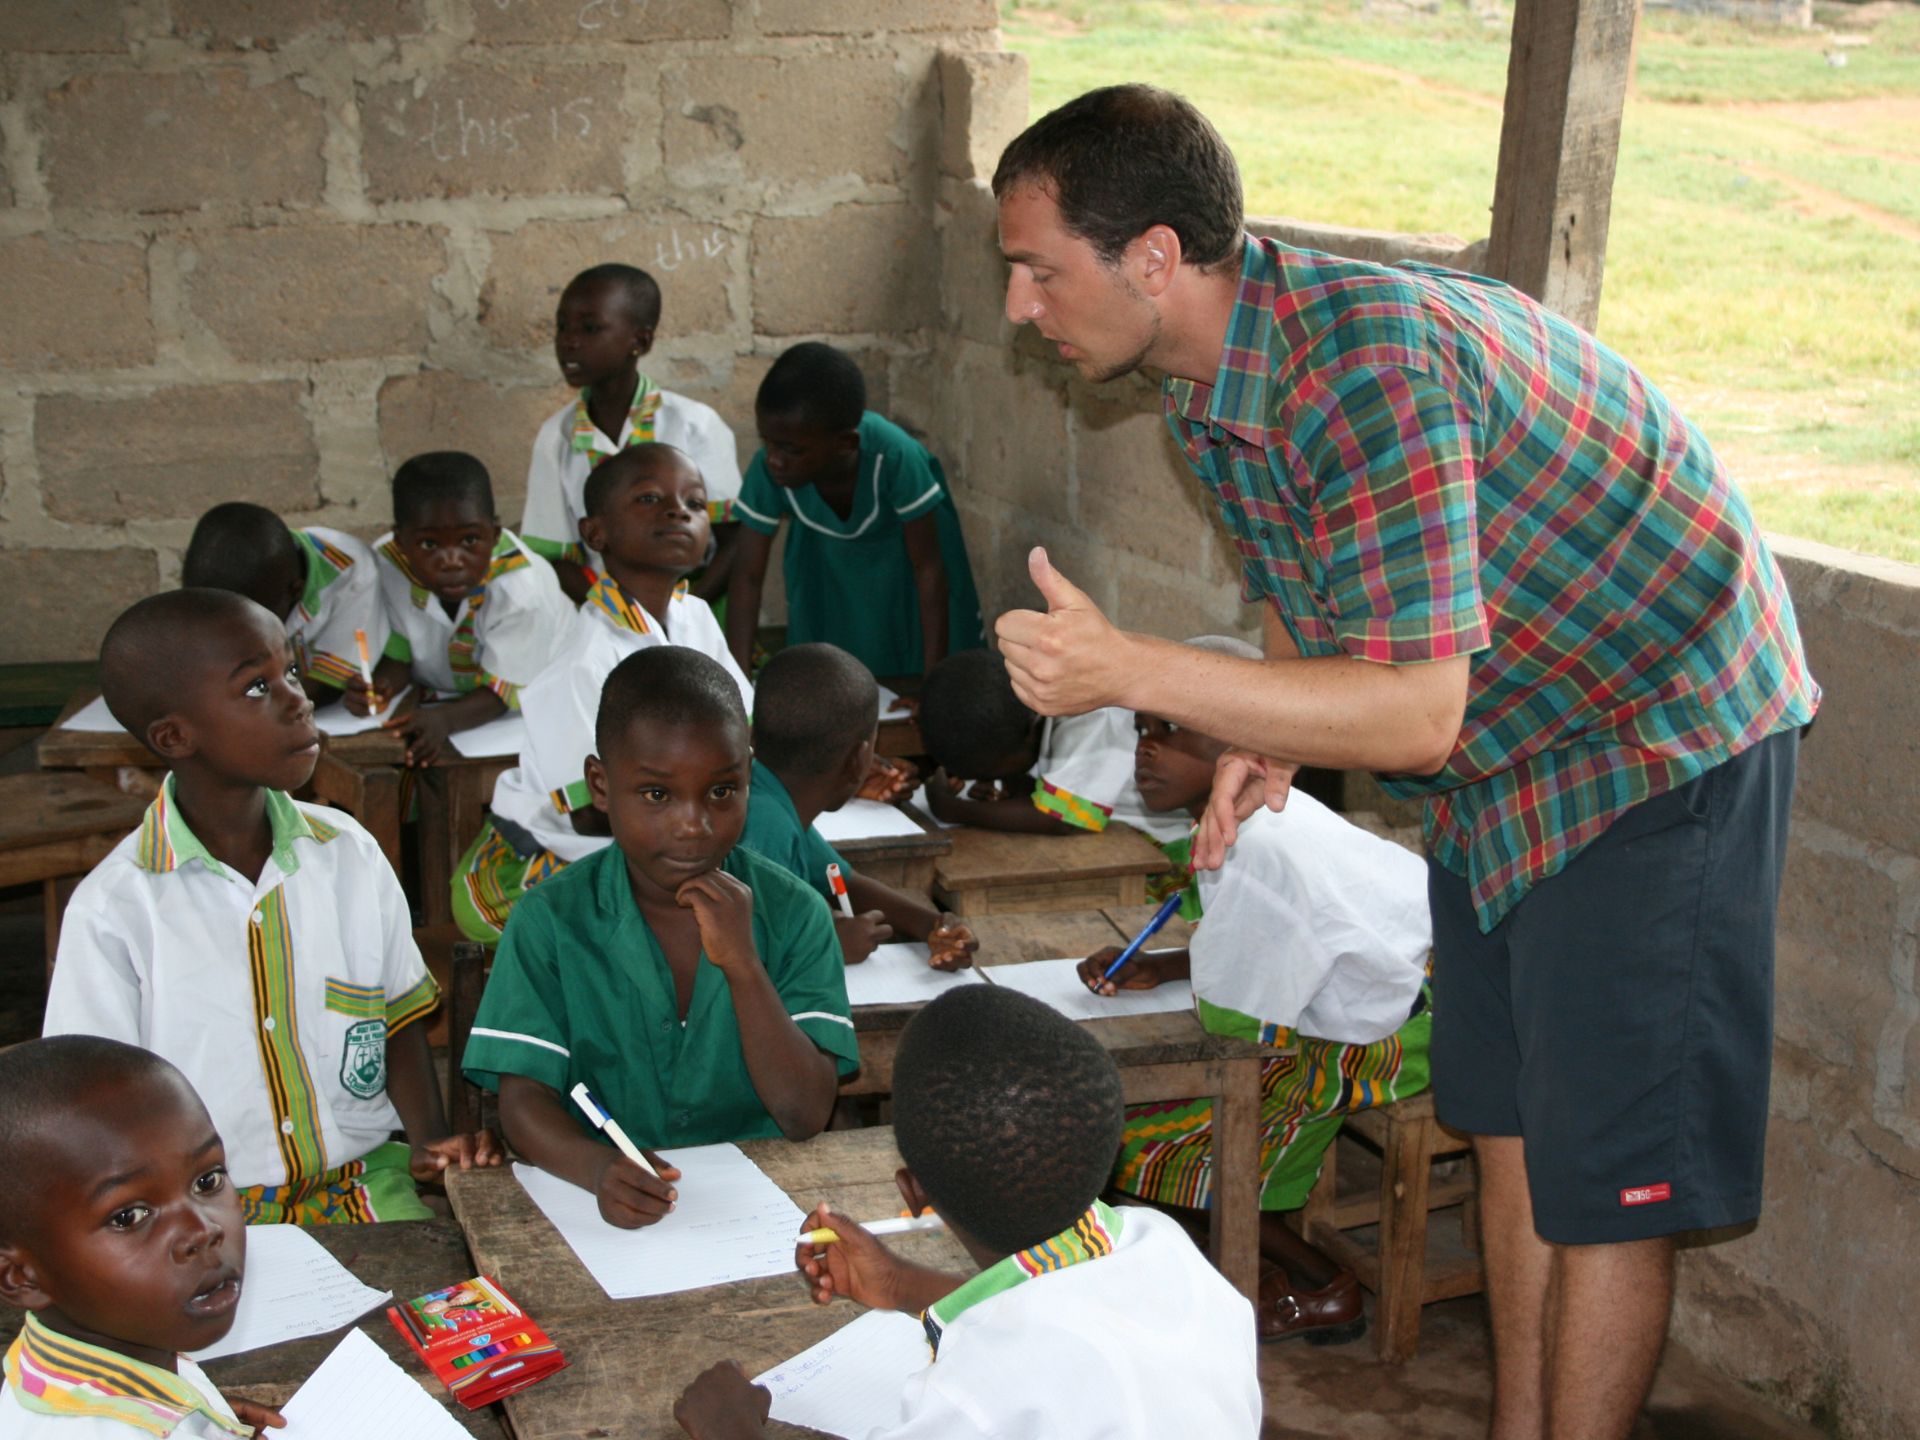 Voluntär mit Schulkindern in einer Schule in Kenia